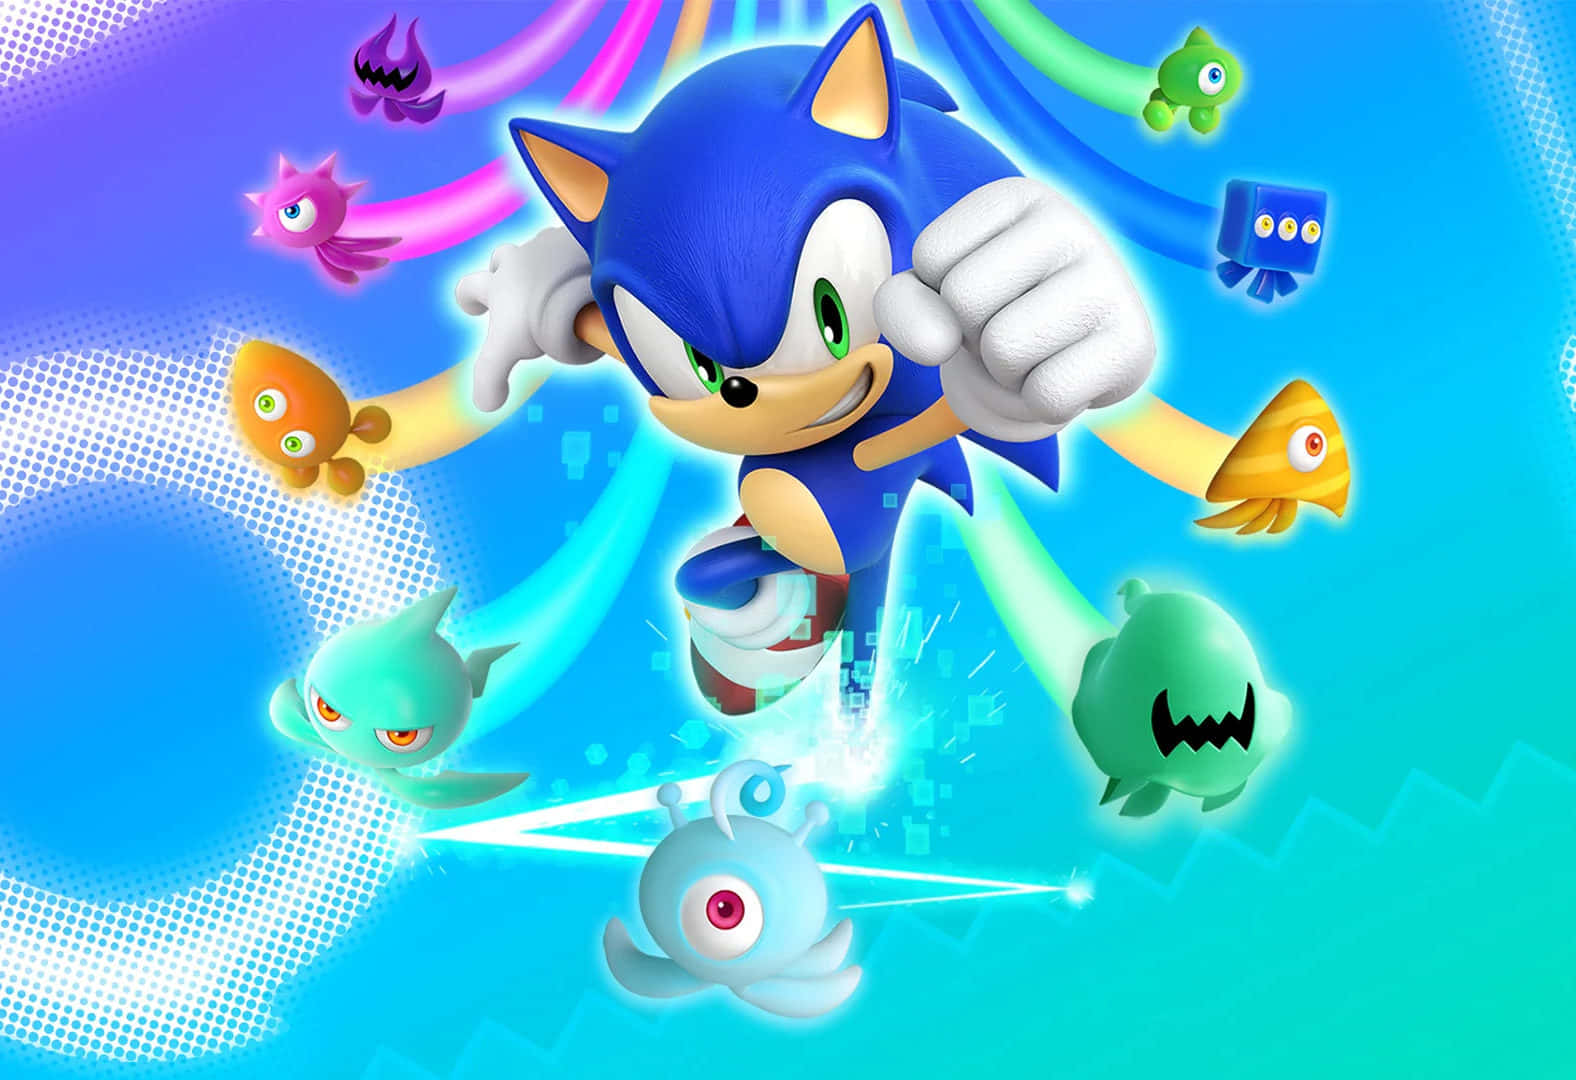 Sonic Exploring A New Adventure Wallpaper